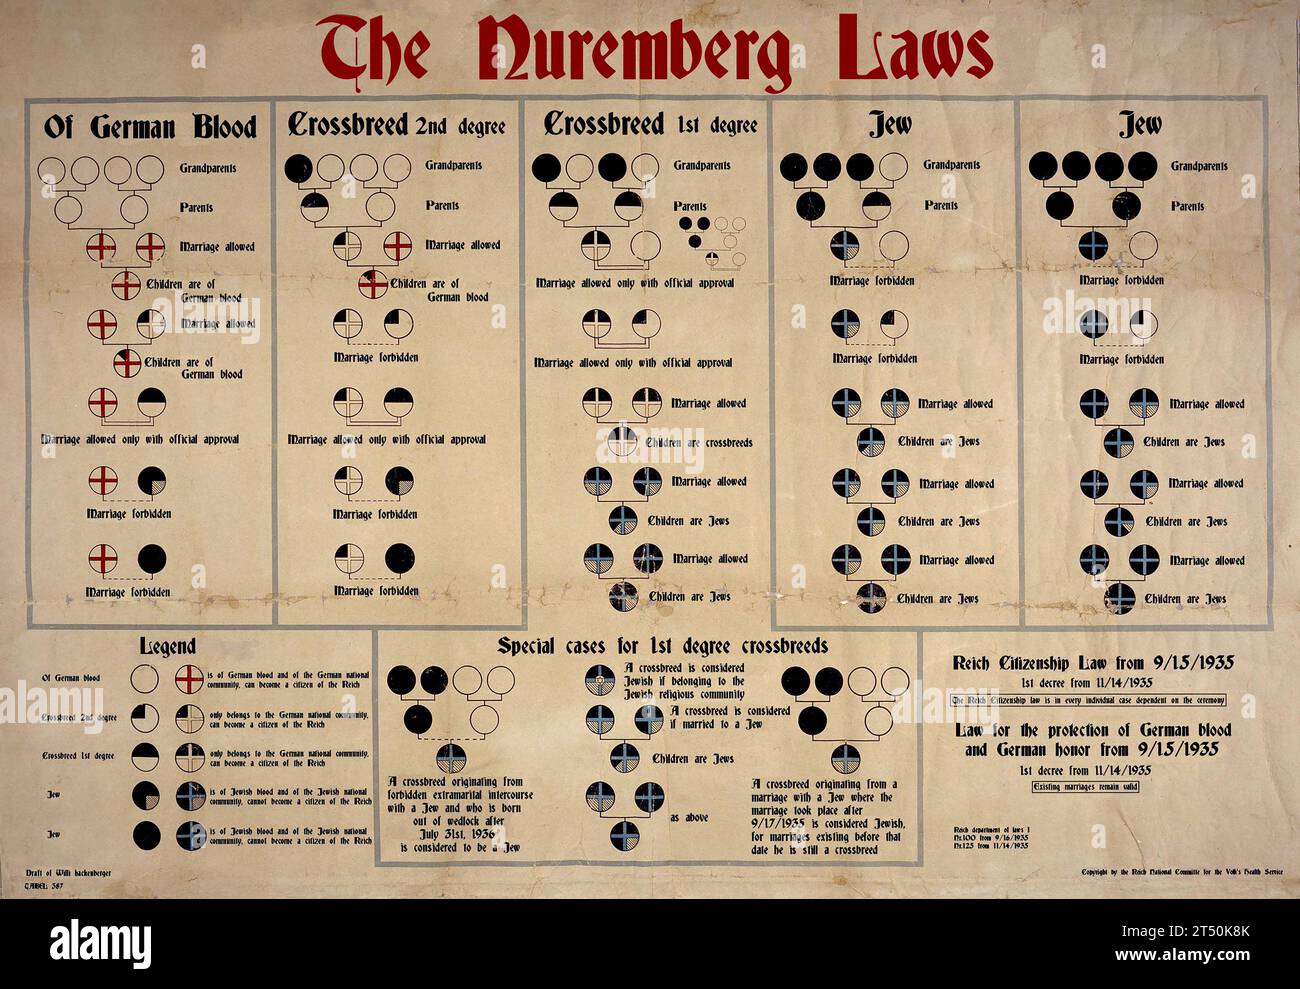 Die Nürnberger Gesetze in englischer Sprache. Die Nürnberger Gesetze waren antisemitische und rassistische Gesetze, die am 15. September 1935 in nationalsozialem Deutschland erlassen wurden Stockfoto